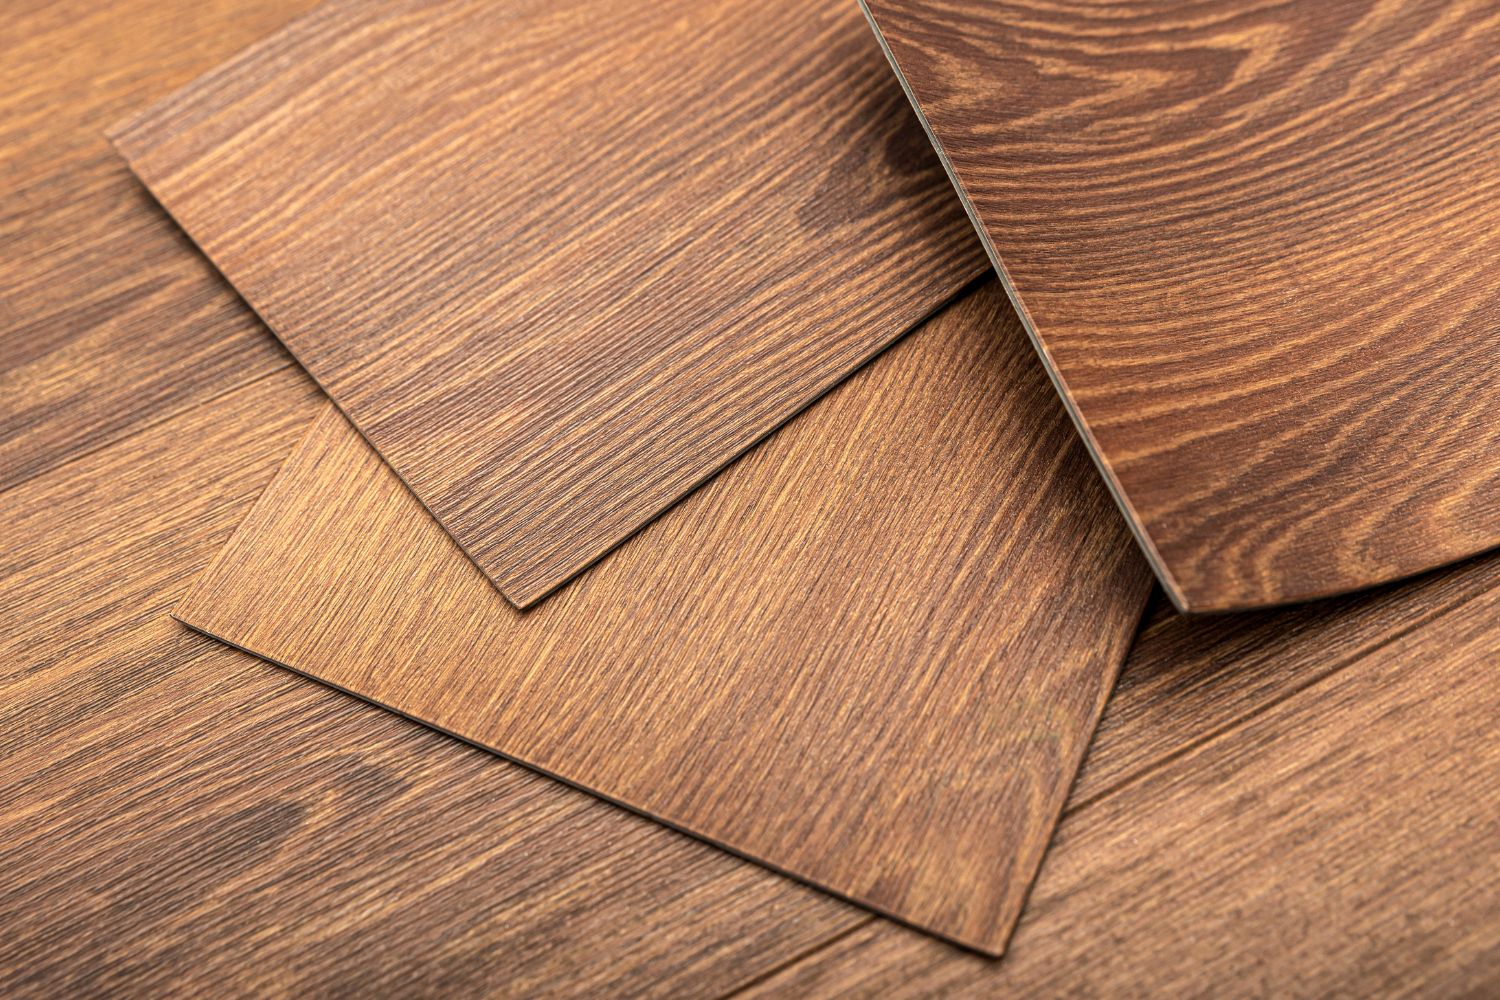 Choosing the best vinyl plank flooring